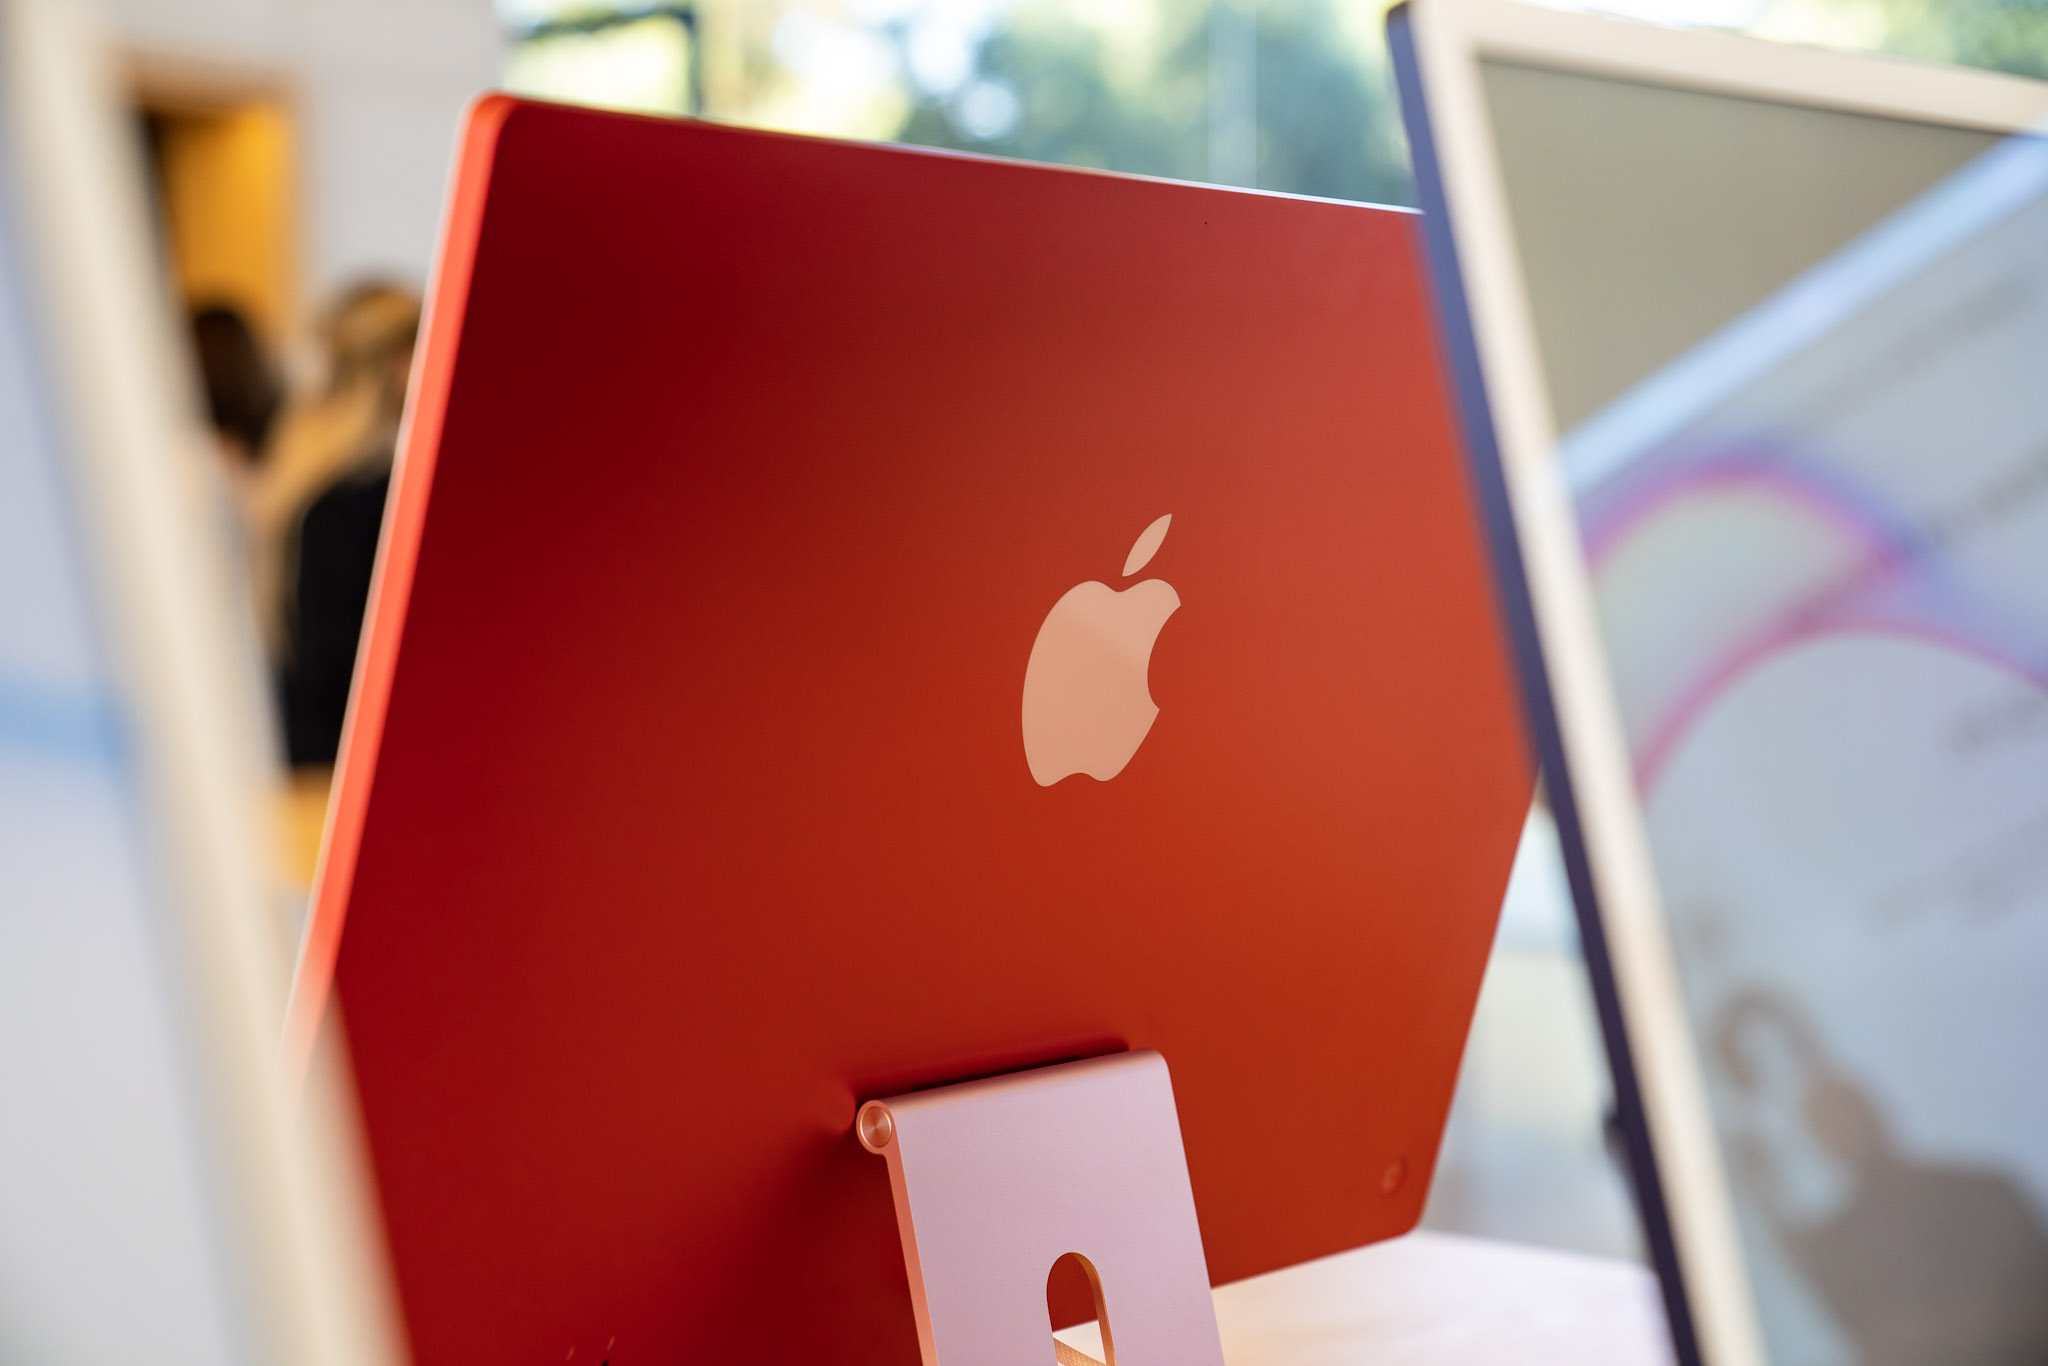 Nouvel iMac 27 pouces : c'est mort, quelle alternative ? - ZDNet